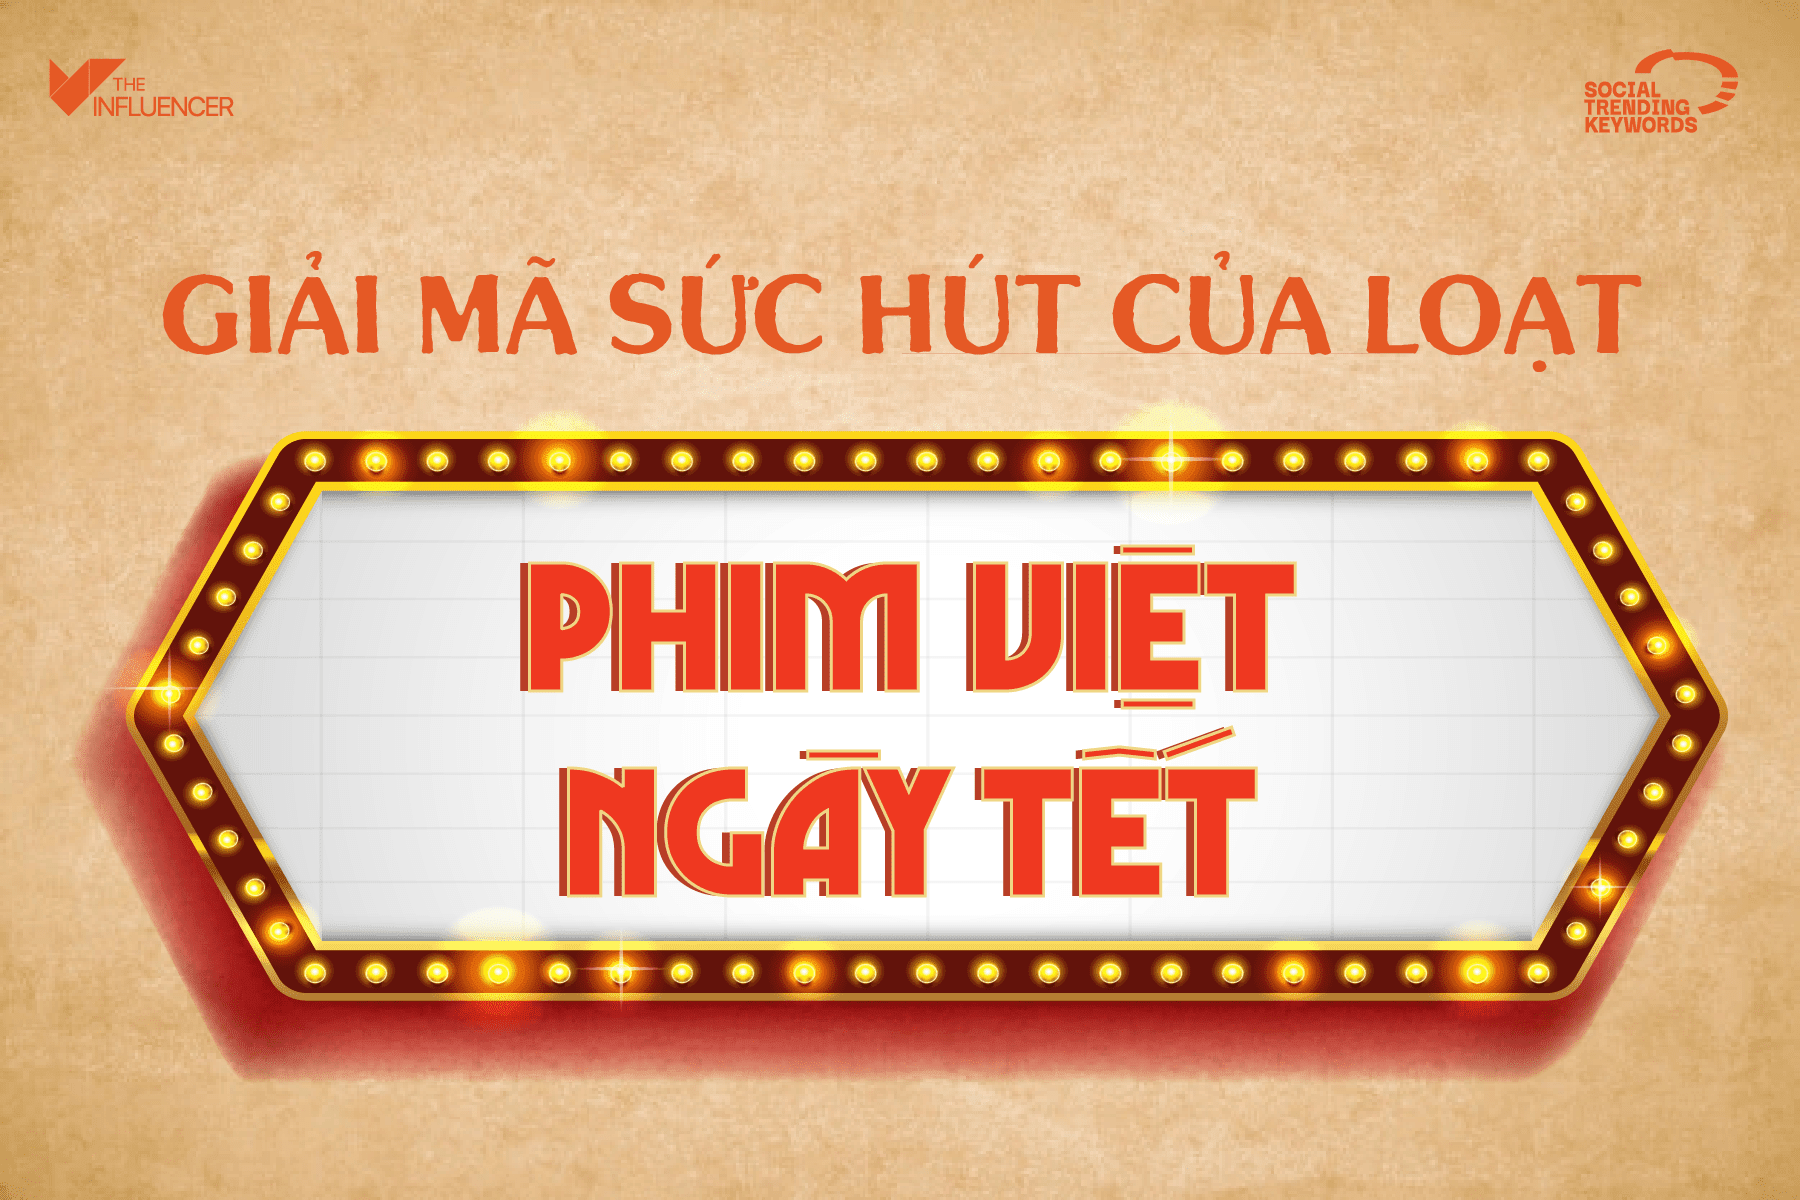 #SocialTrendingKeywords: Giải mã sức hút của loạt phim Việt ngày Tết